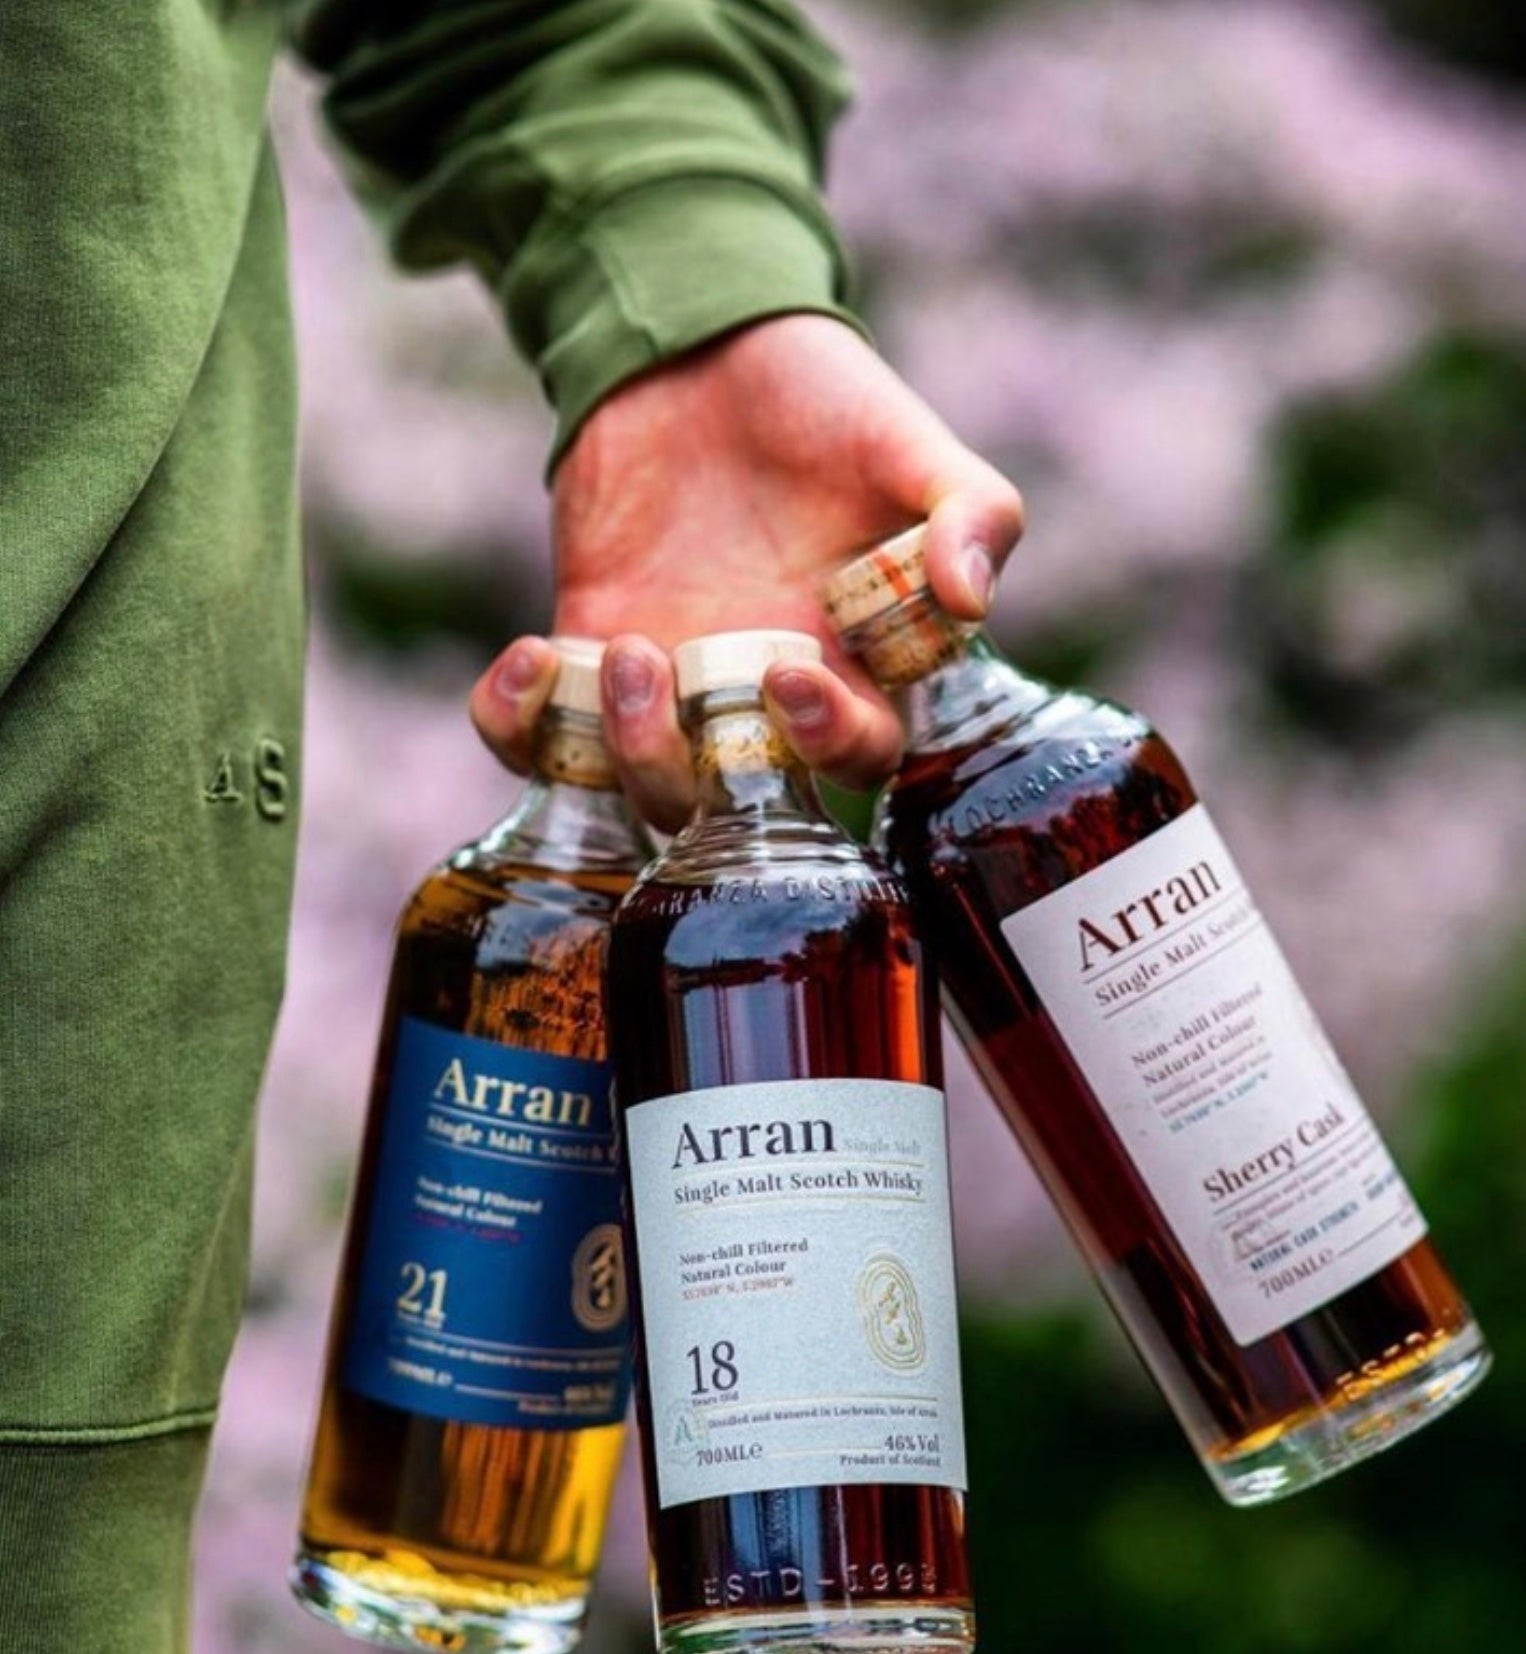 Arran Sherry Cask “The Bodega” Single Malt Scotch Whisky